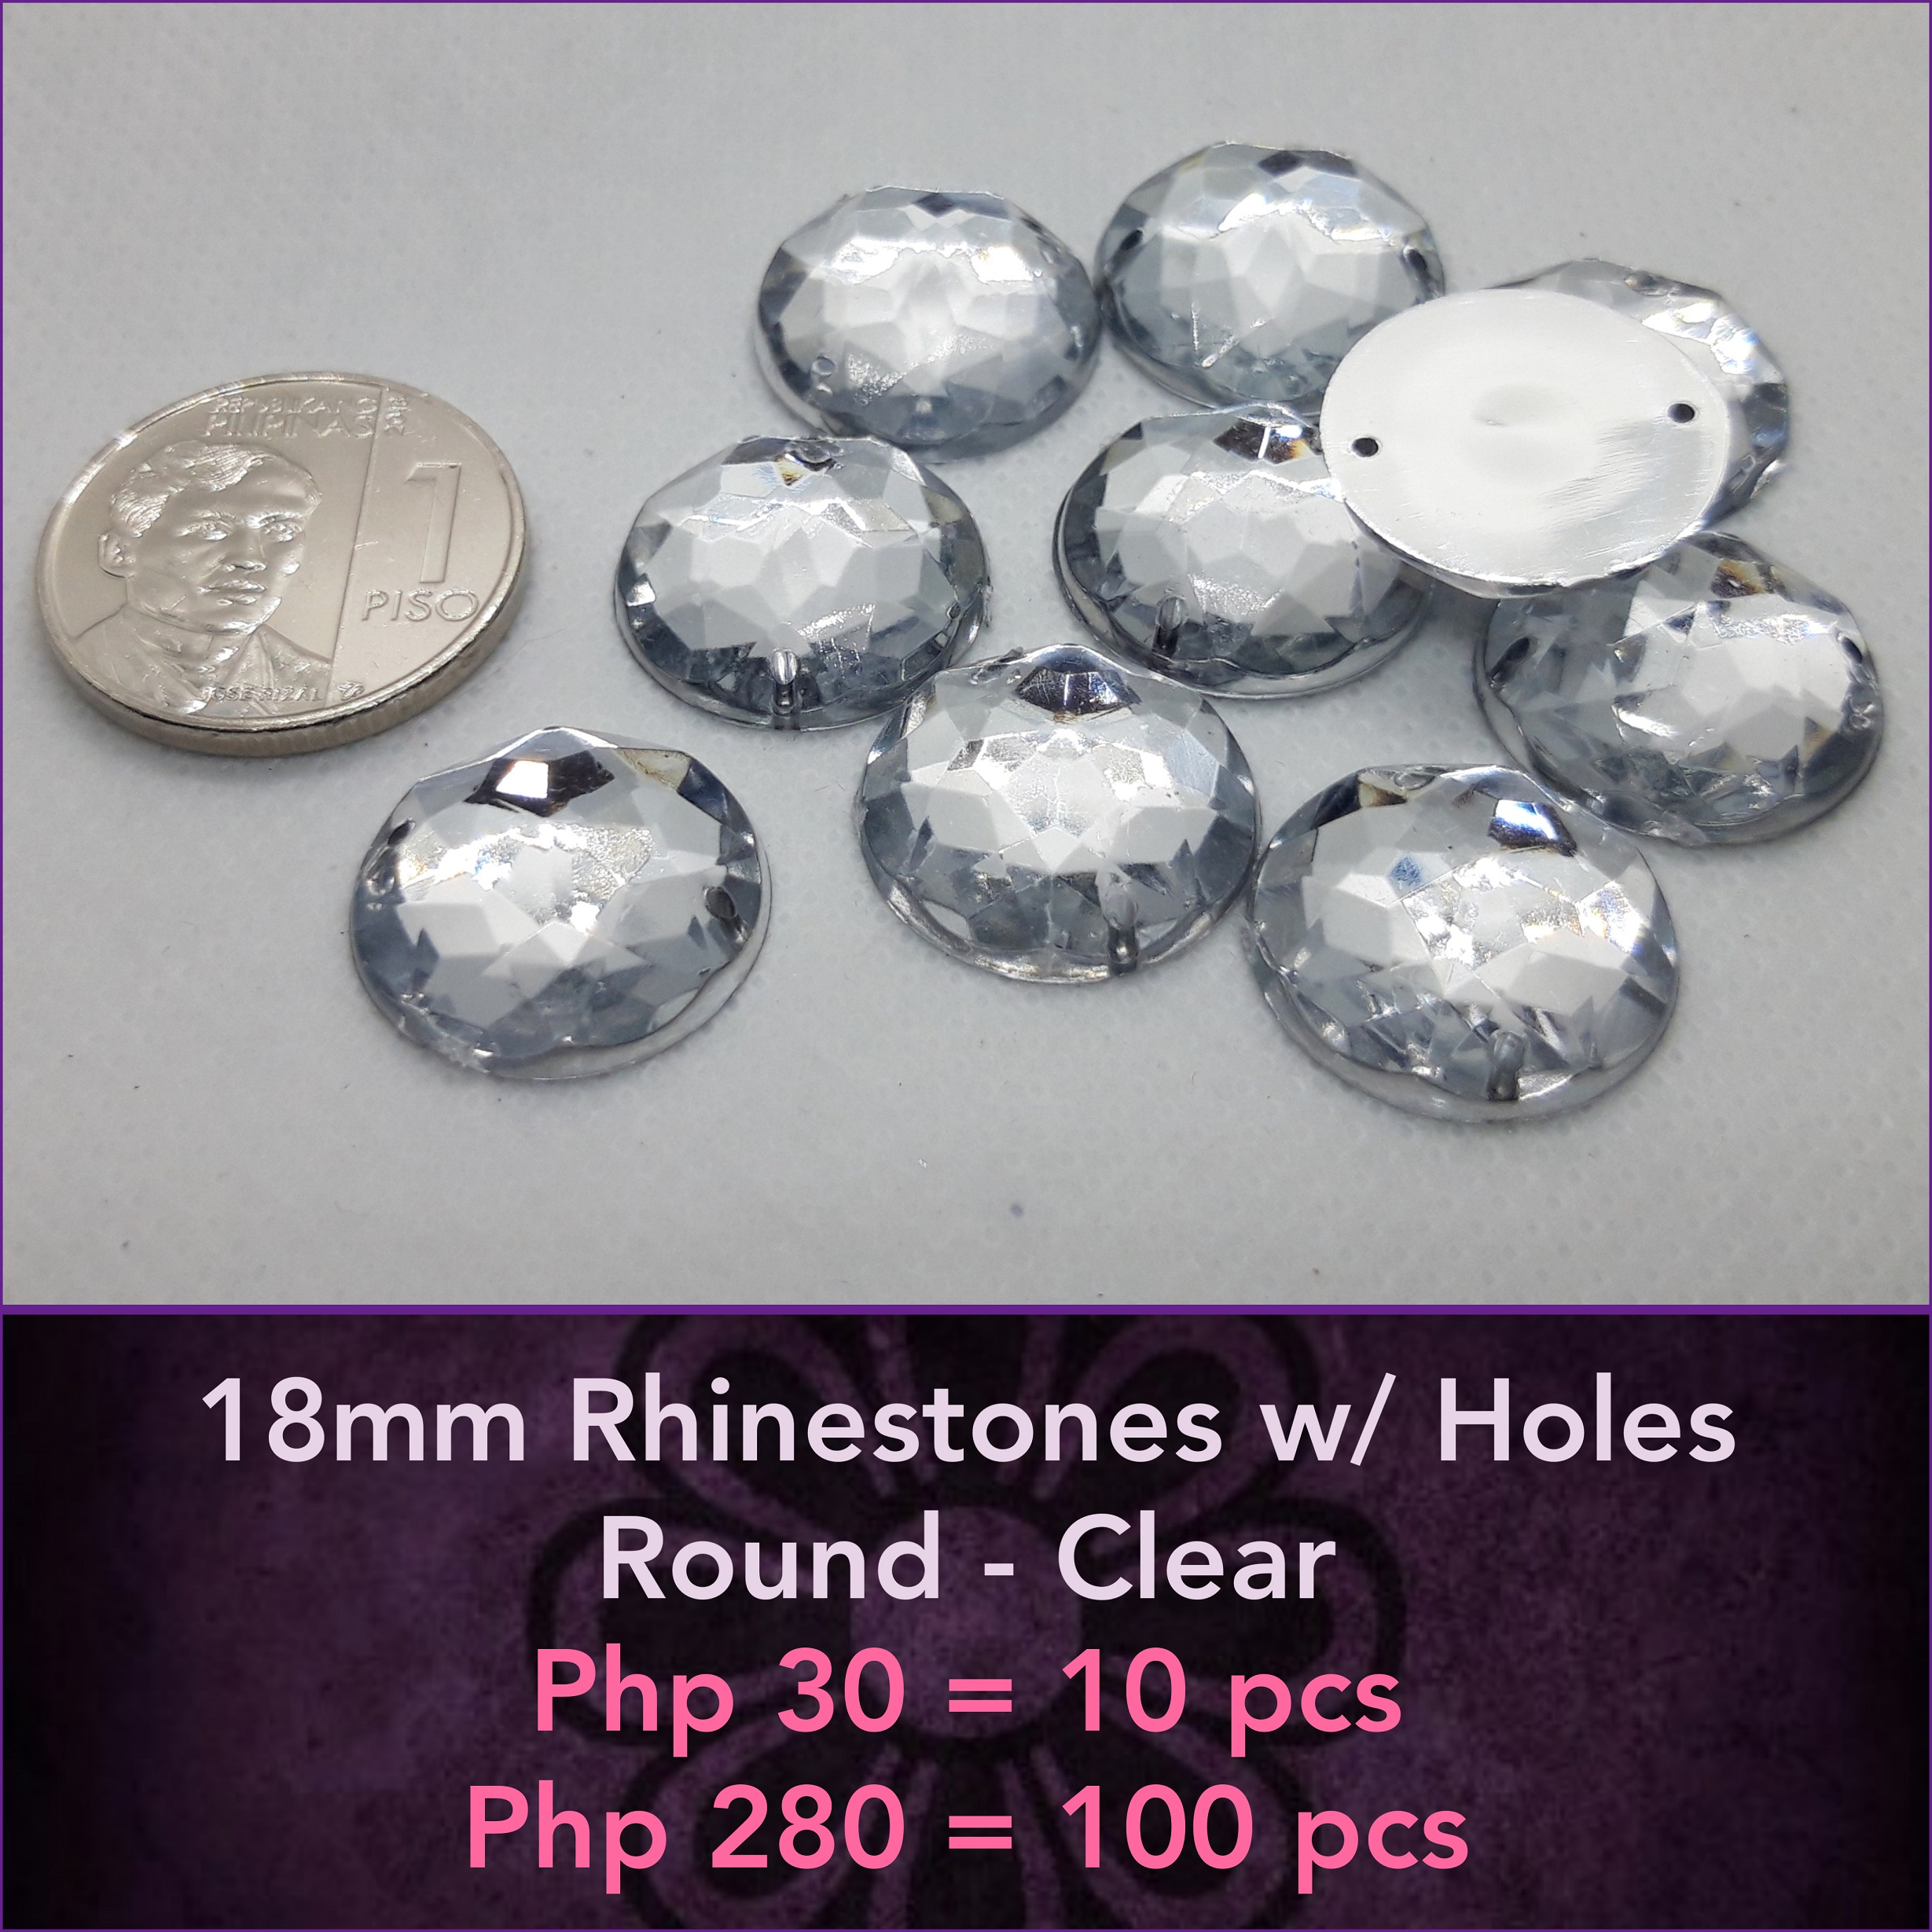 3mm Rhinestones - Clear w/ Silver Back (100pcs)